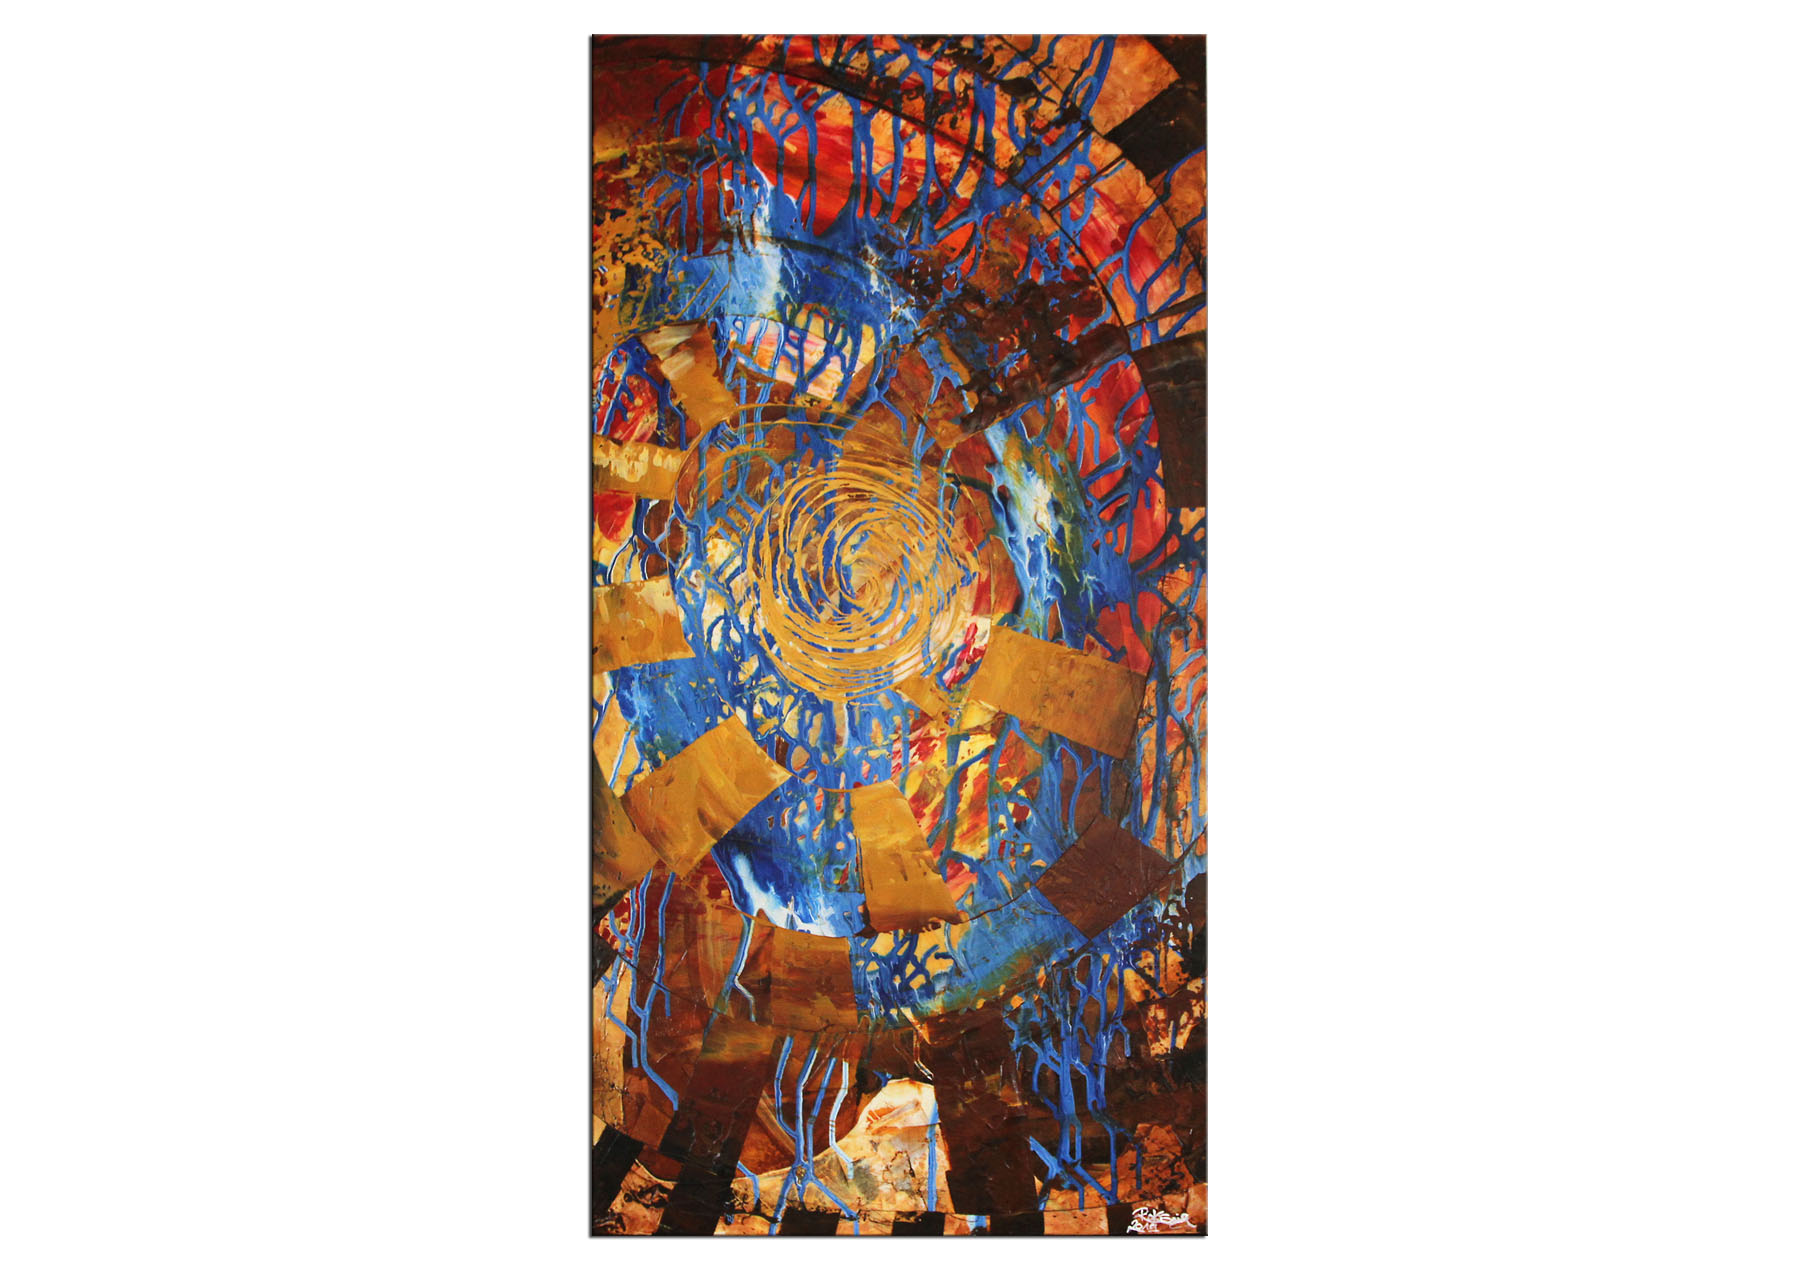 Gemälde abstrakt, R.König: "Burning Man I"